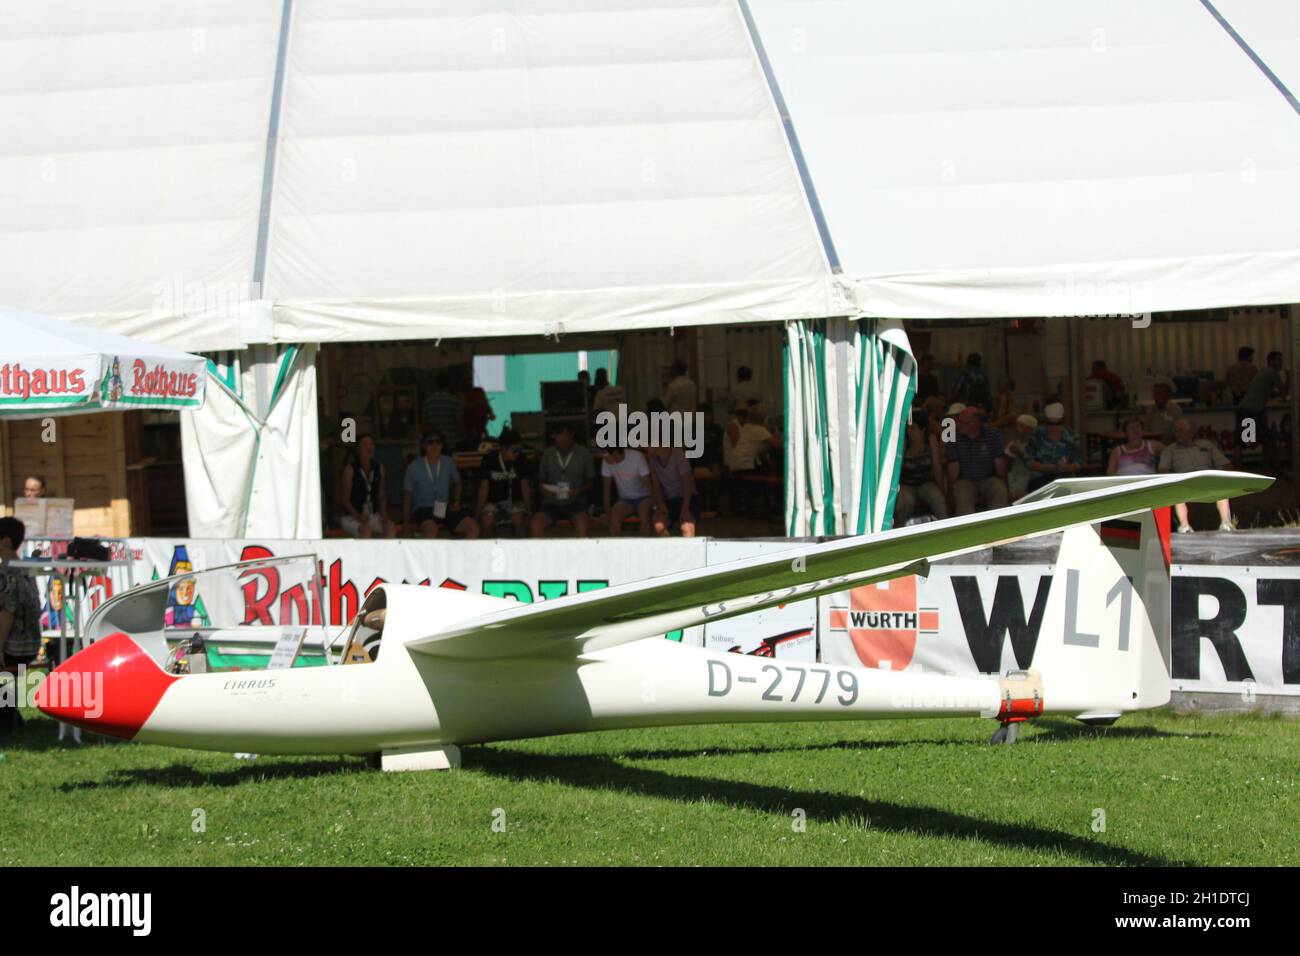 Es gibt Segelflieger und Skiflieger - beides zu sehen im Adler Skistadion von Hinterzarten - Mixed Wettbewerb beim FIS Sommer Grand Prix 2012 en Hinte Foto de stock